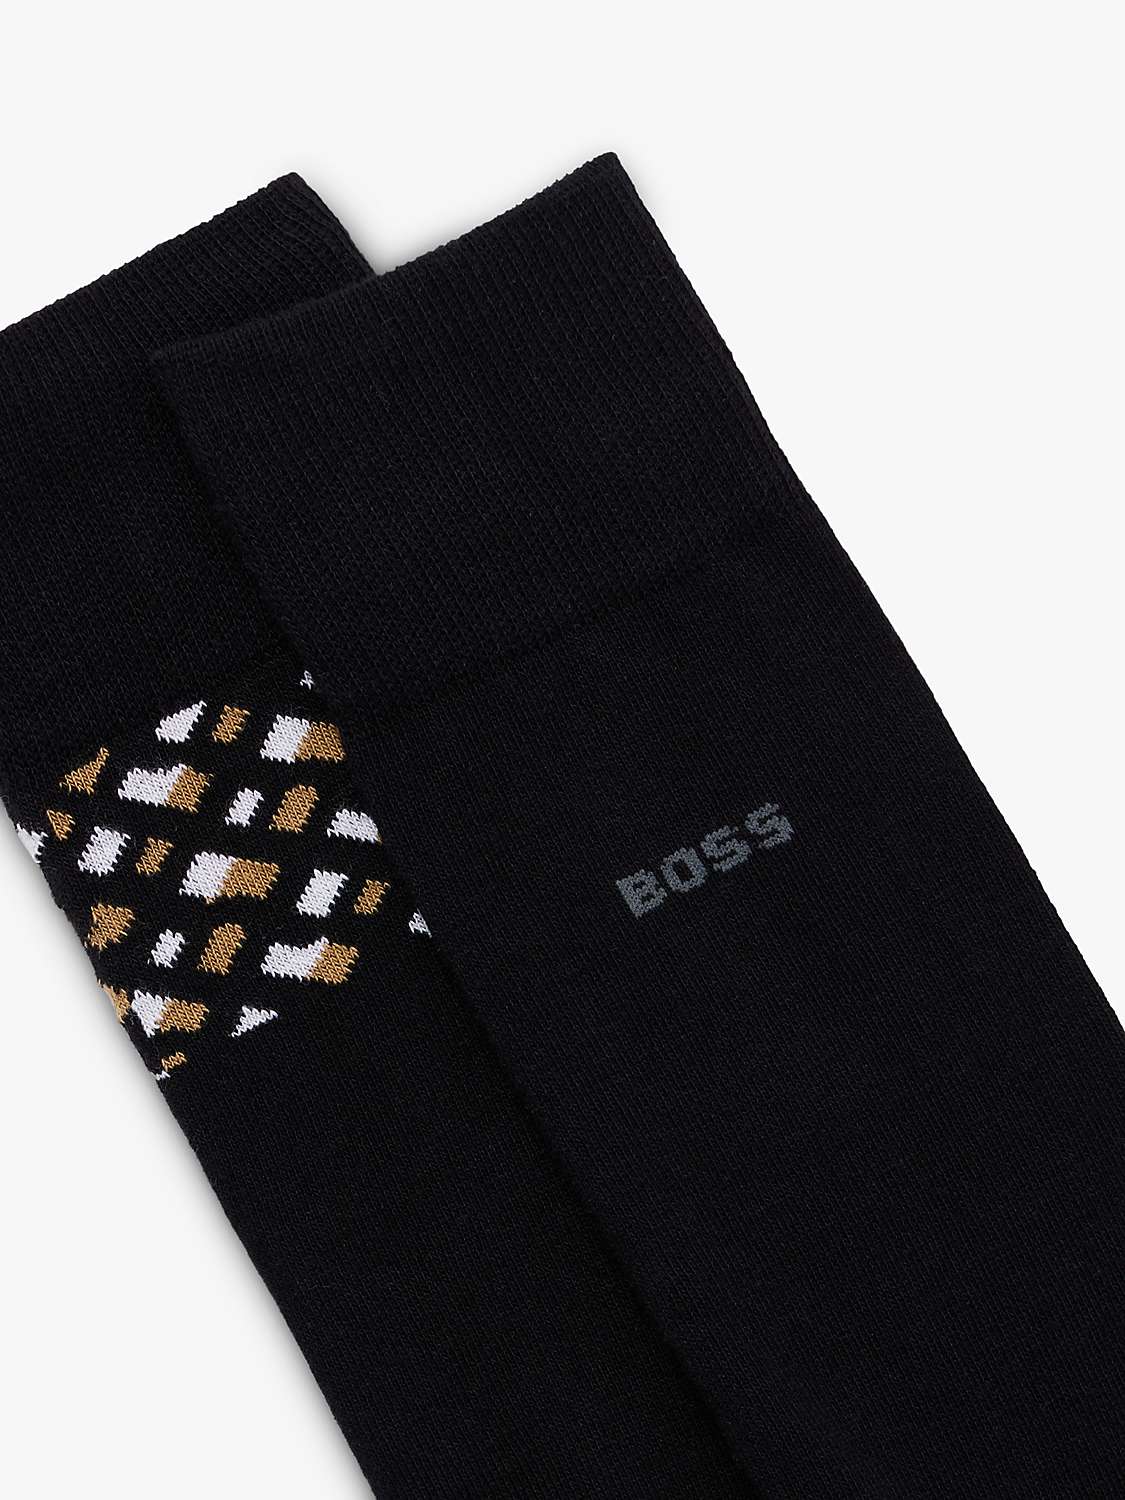 Buy HUGO BOSS BOSS Plain & Geometric Pattern Cotton Blend Socks, Pack of 2, Black/Multi Online at johnlewis.com